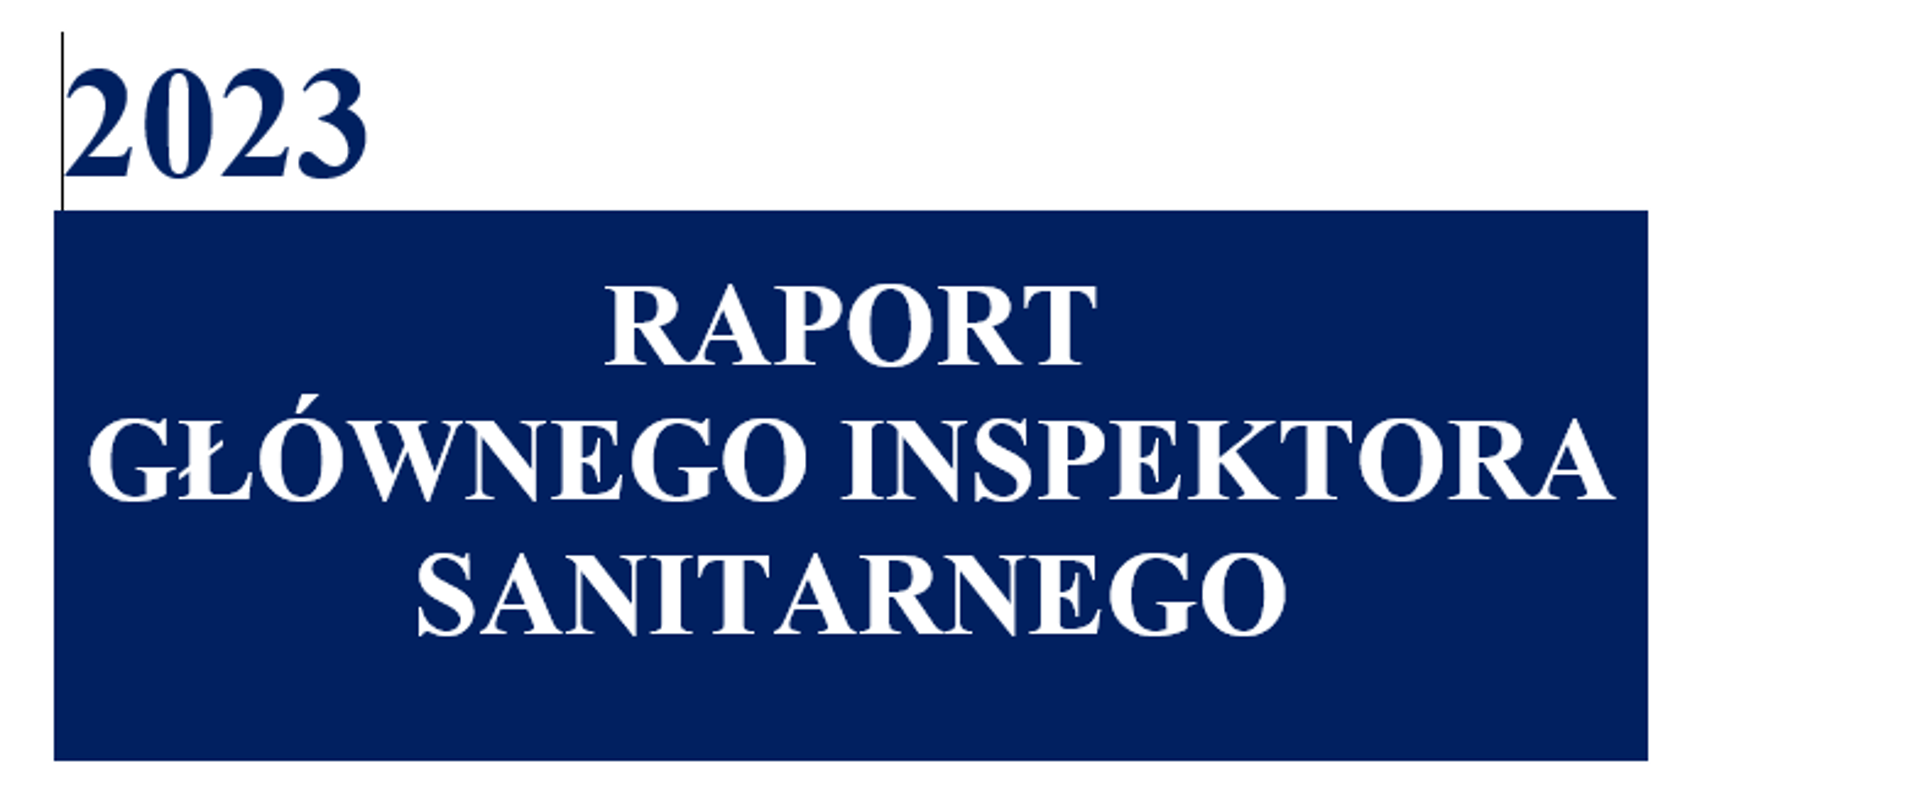 Raport Głównego Inspektora Sanitarnego 